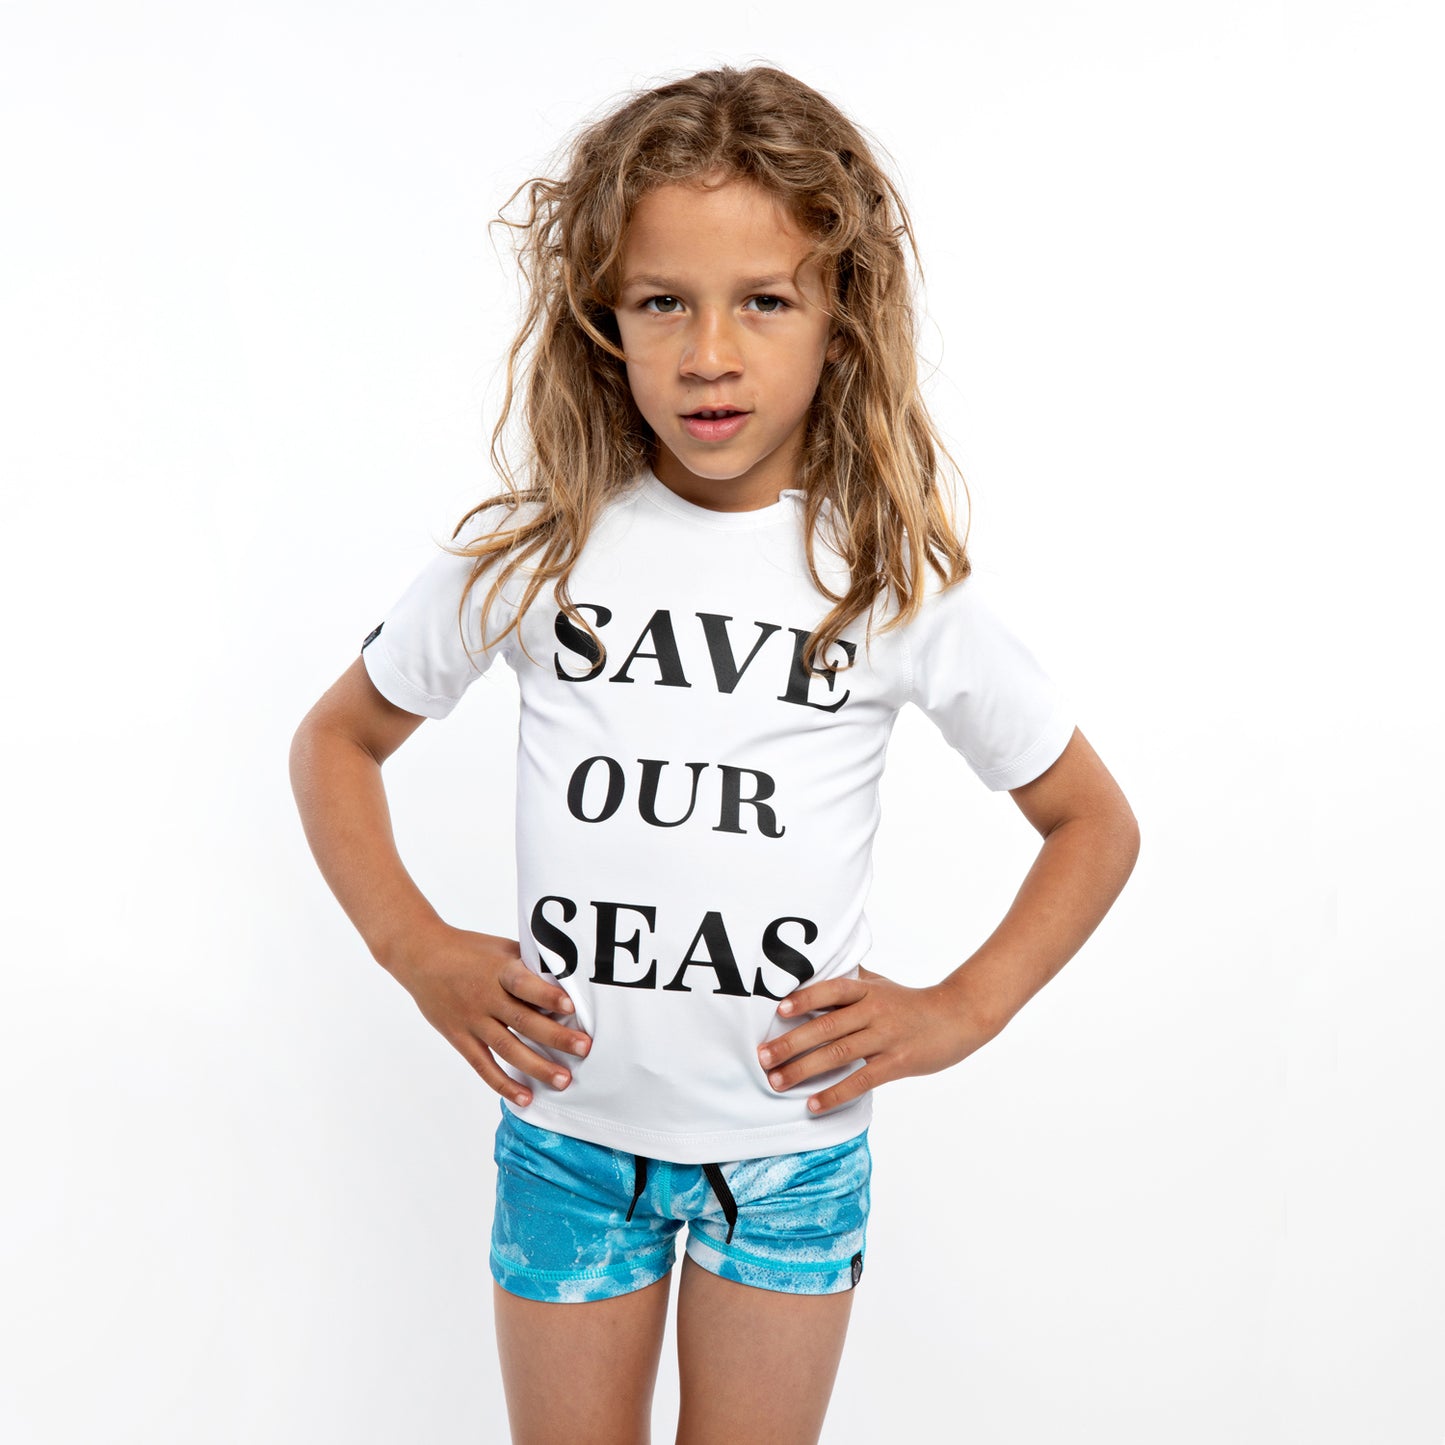 Save our Seas tee white